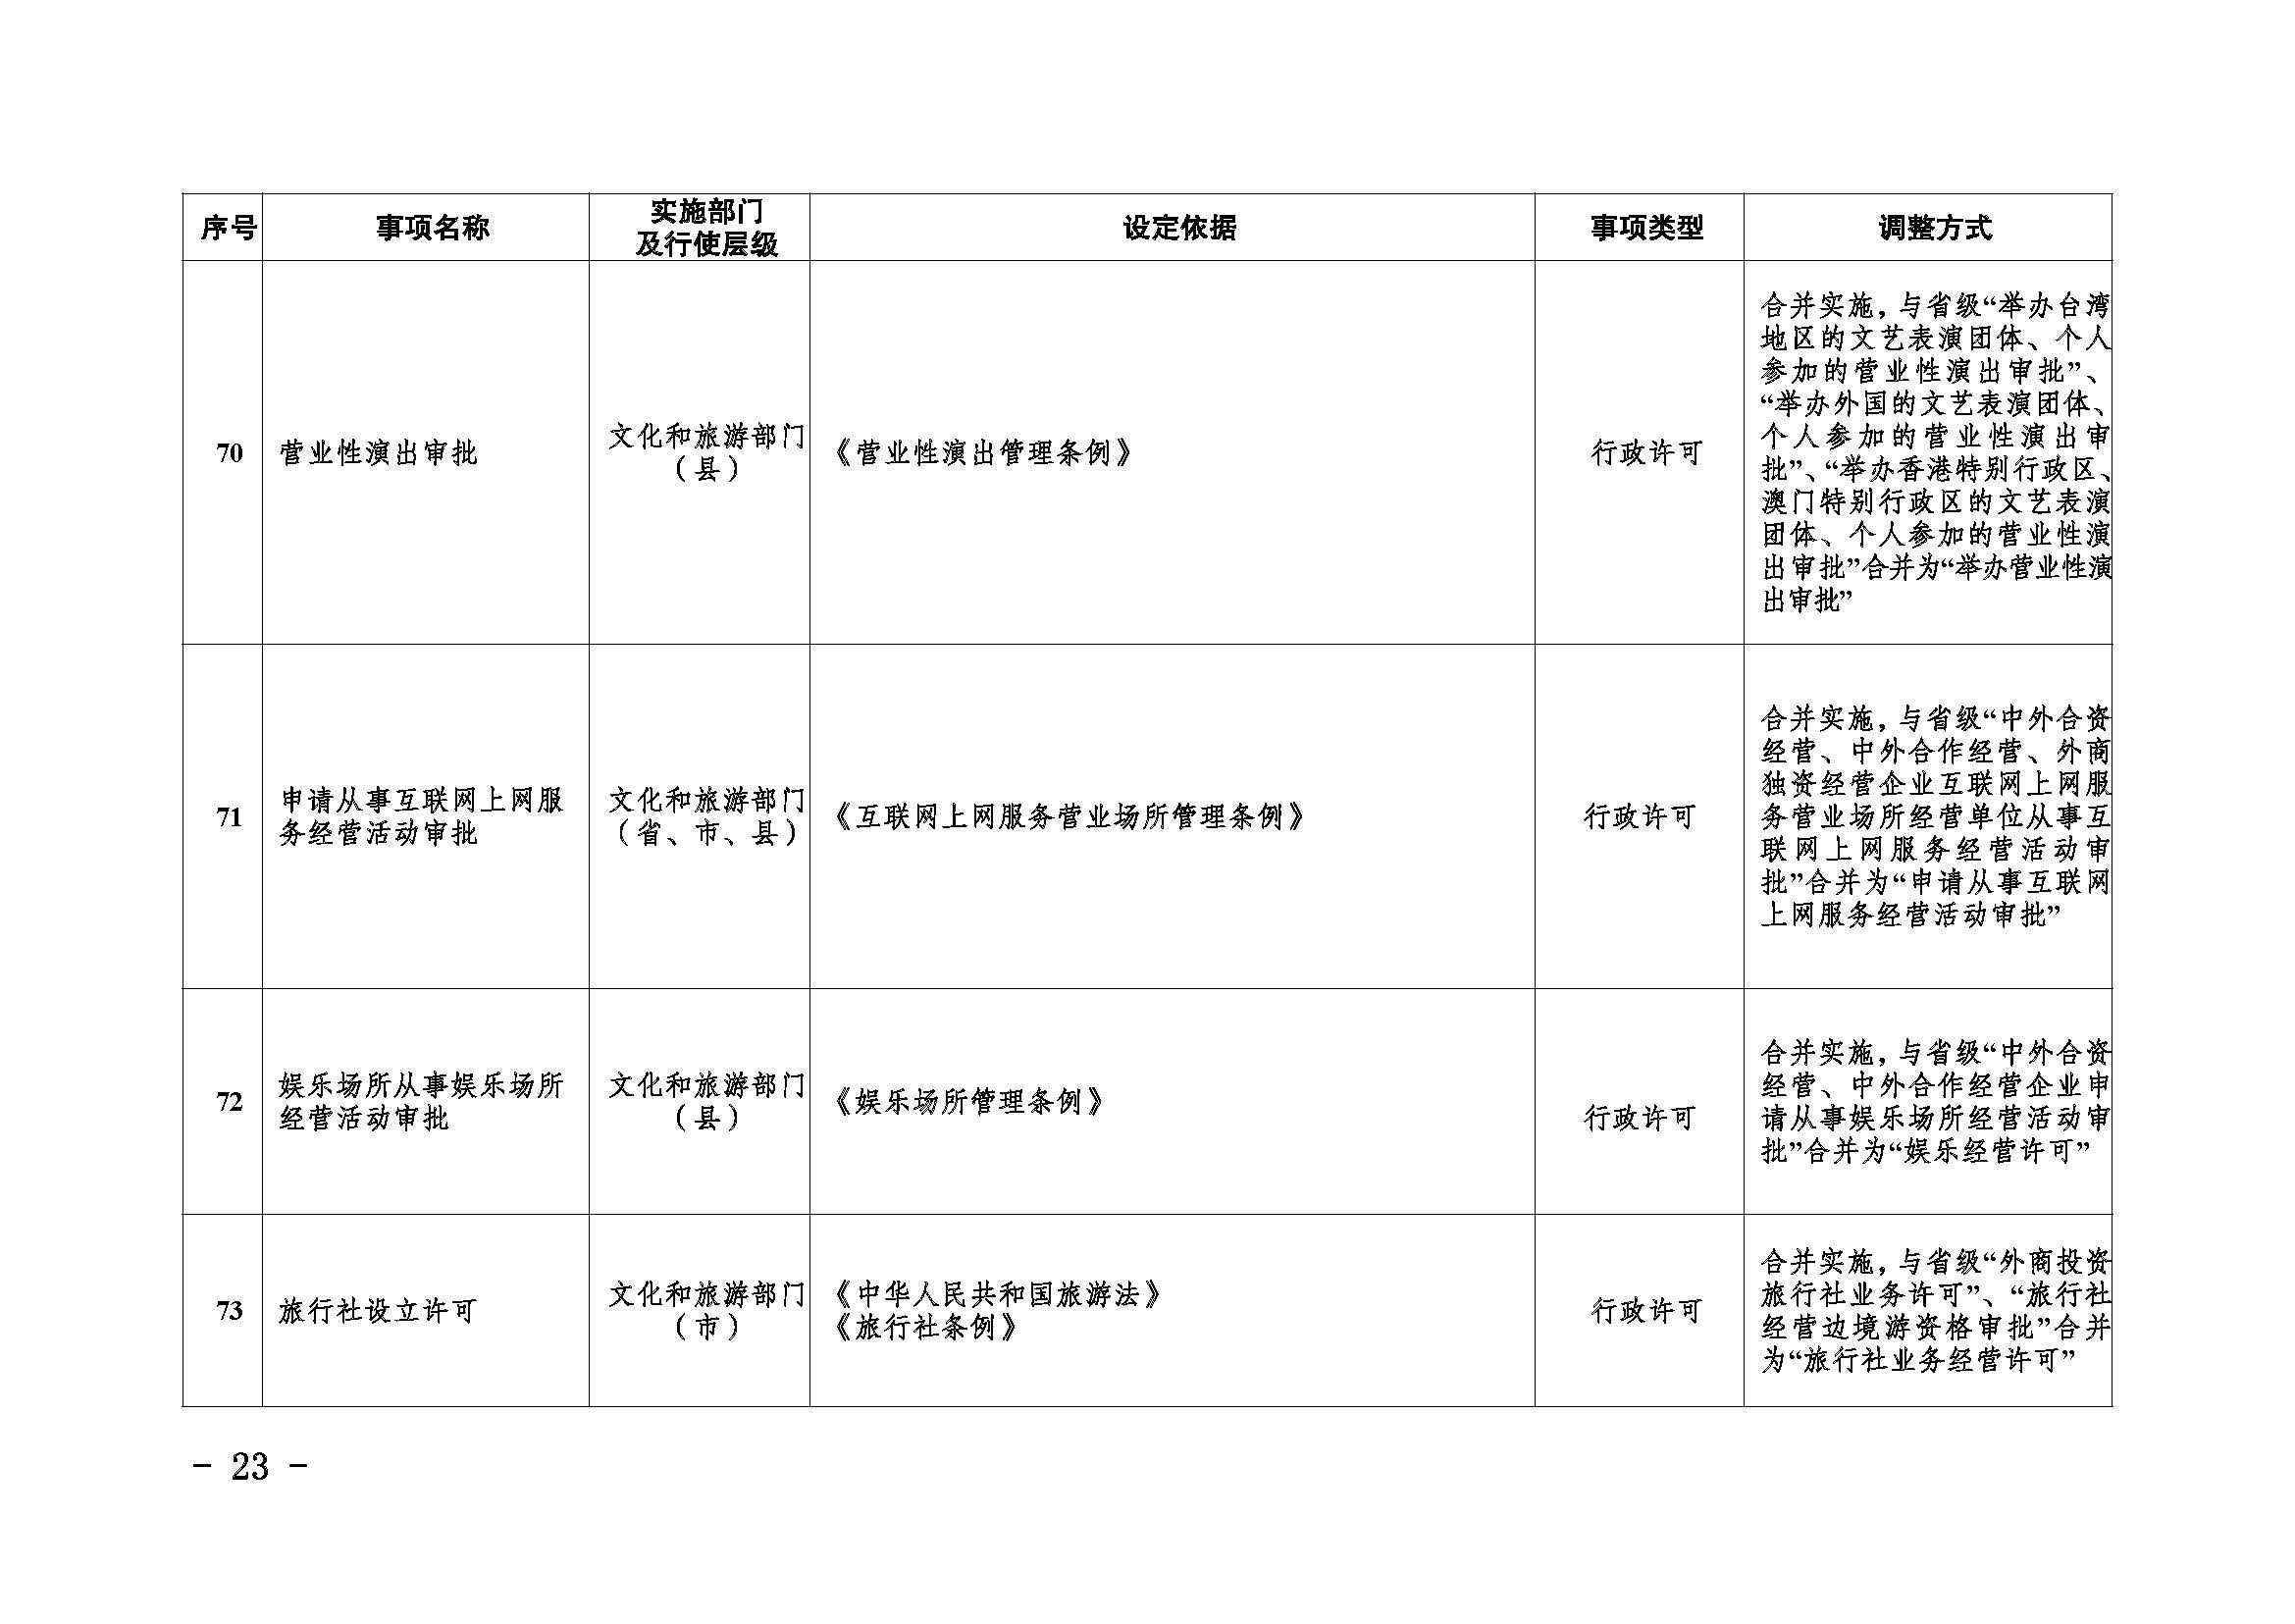 临沧市人民政府办公室关于做好调整370项行政权力事项工作的通知_页面_23